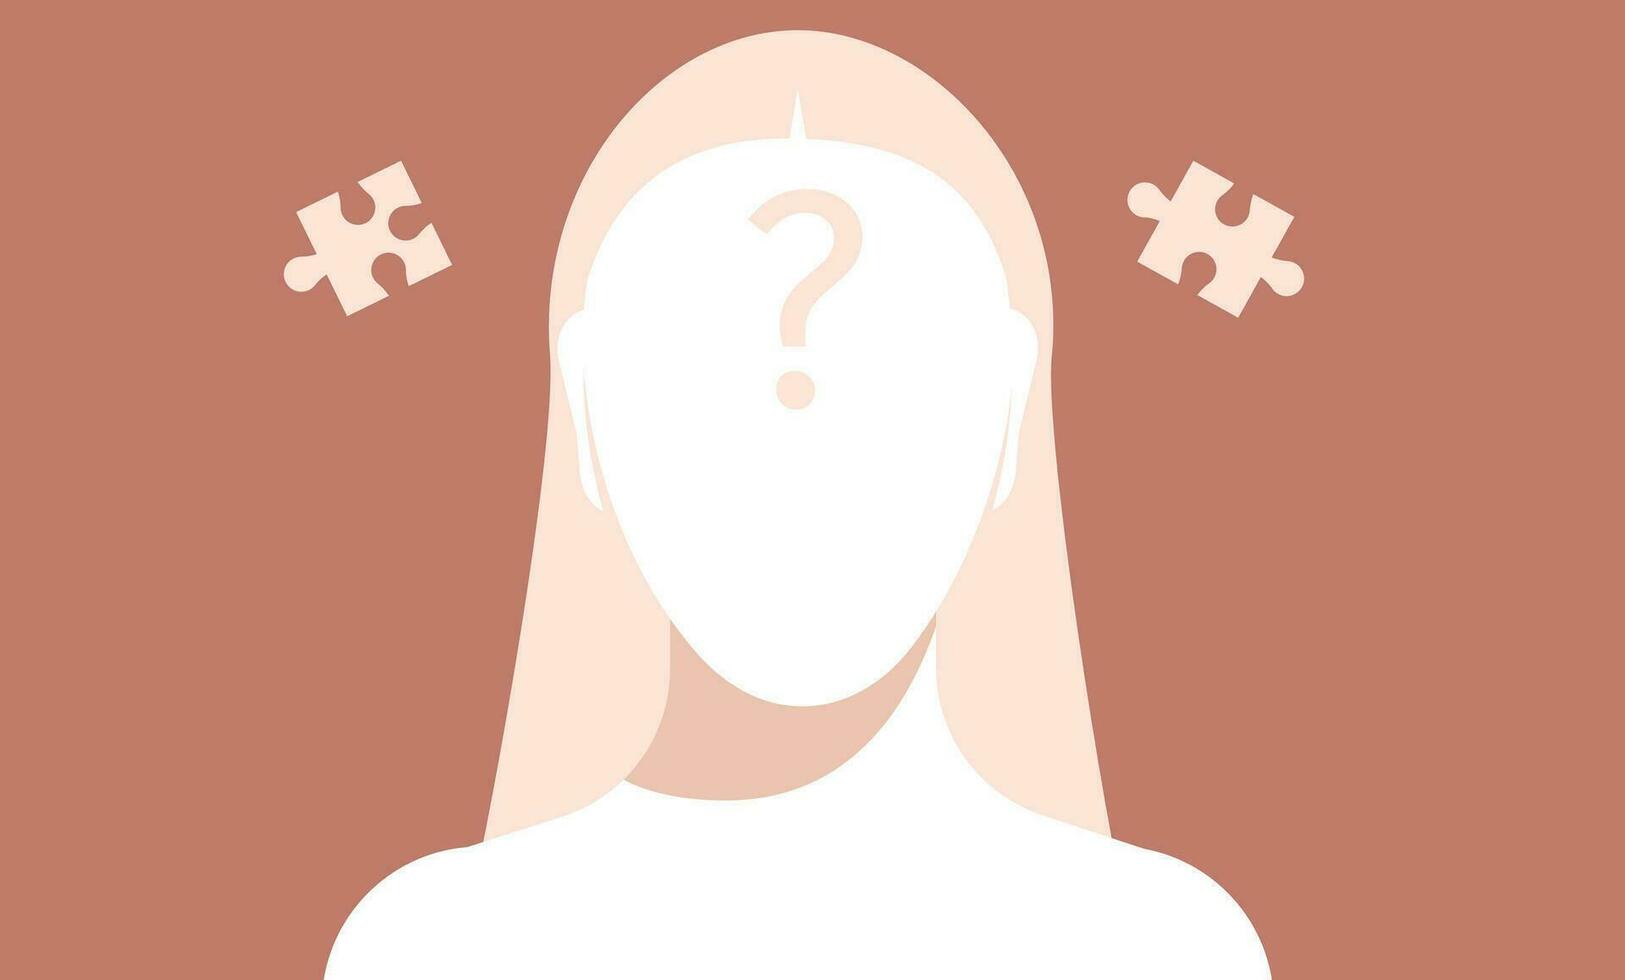 vrouw gezichtsloos silhouet hoofd sjabloon met vraag Mark en puzzel stukken in de omgeving van. vector